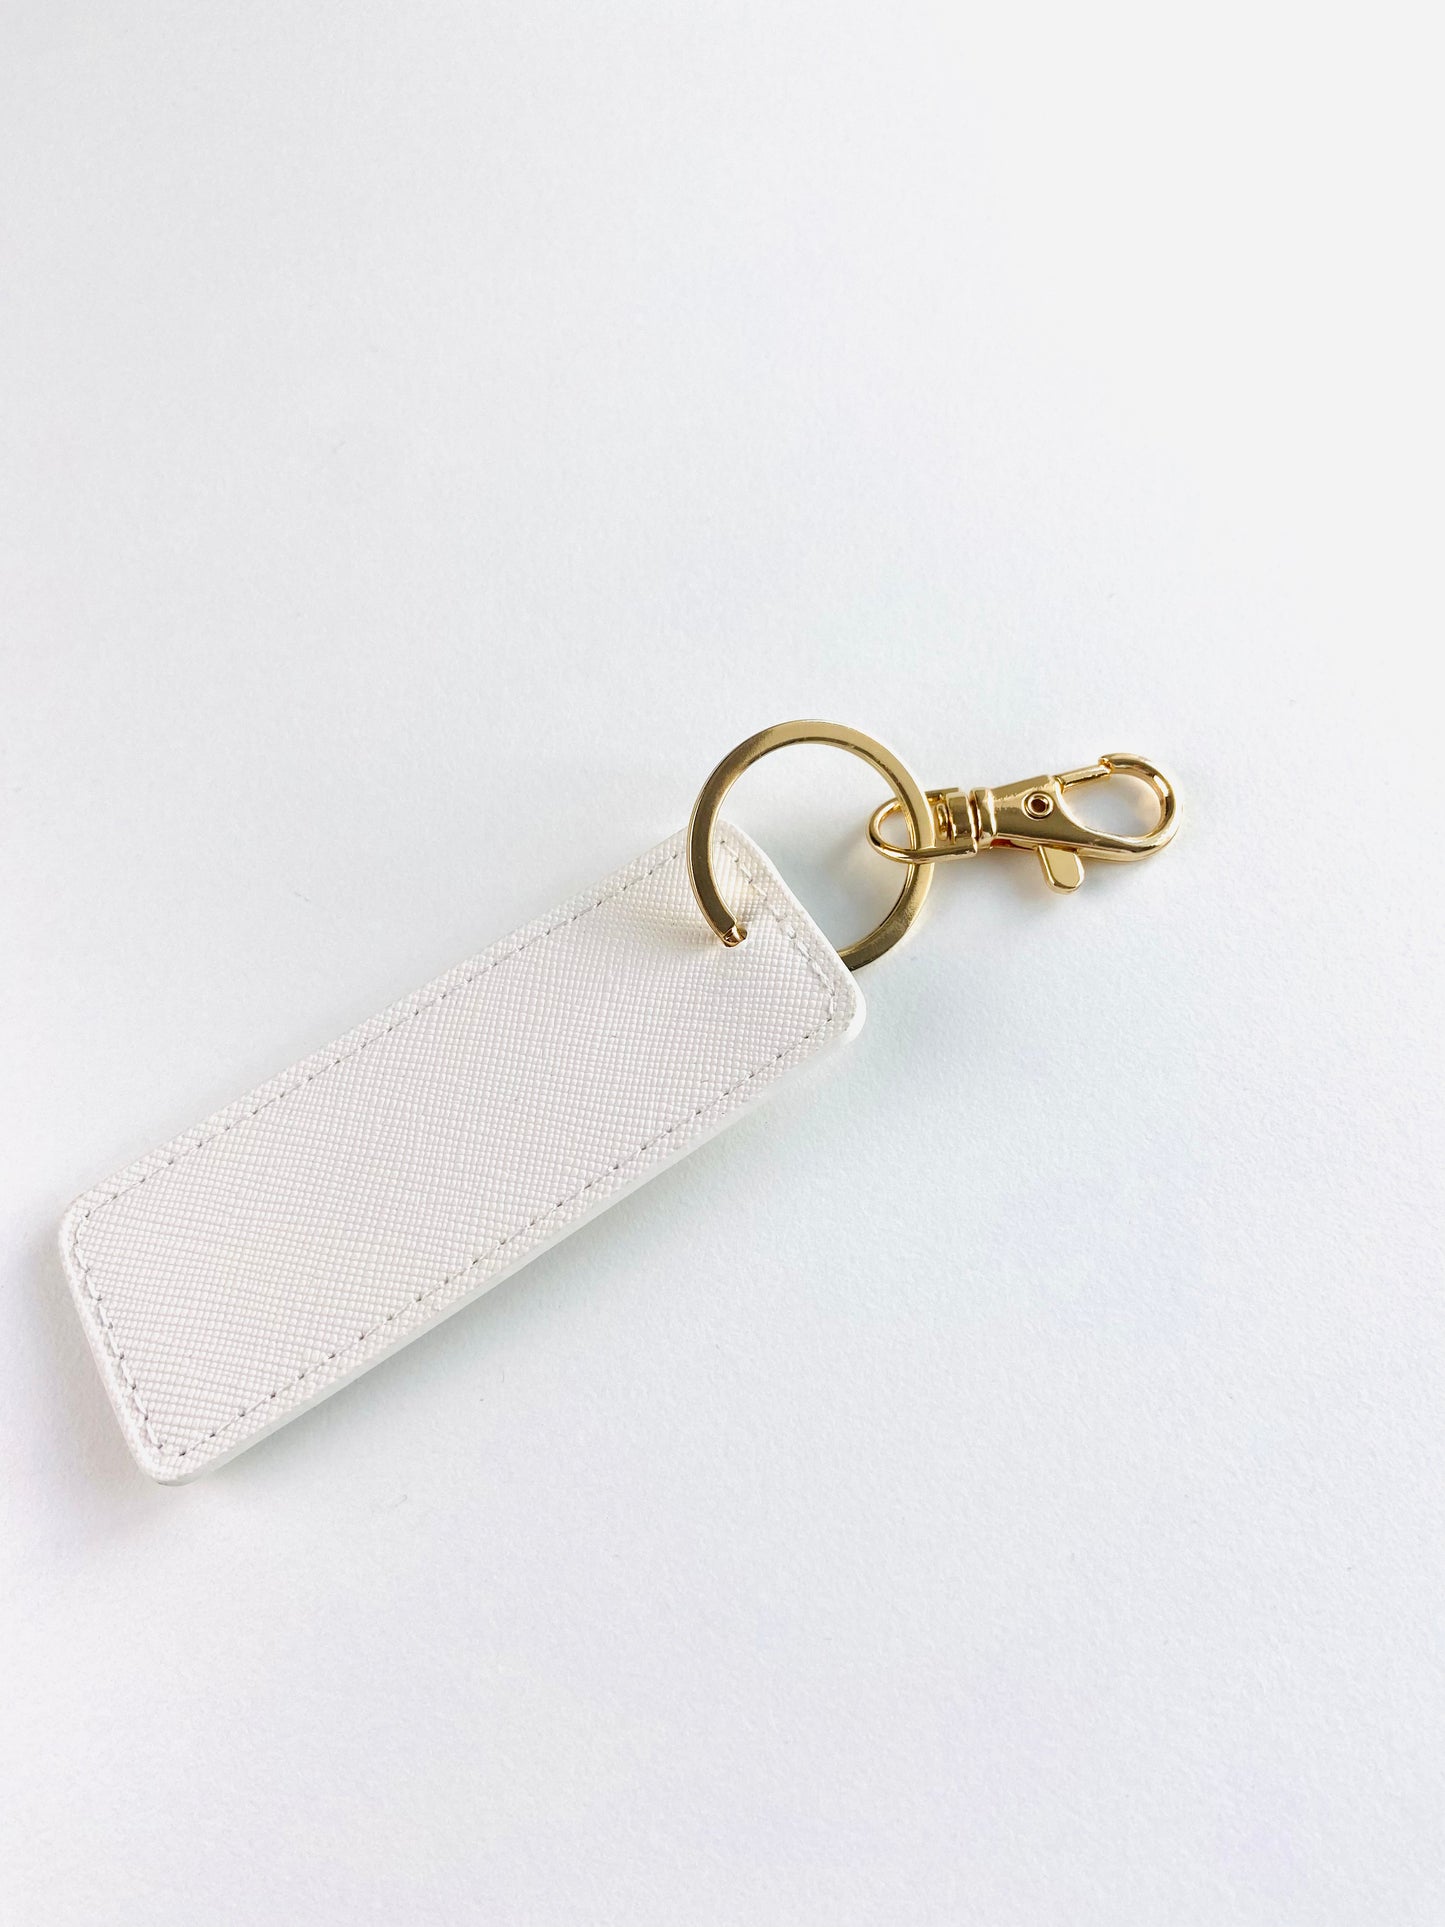 Personalised key/bag charm